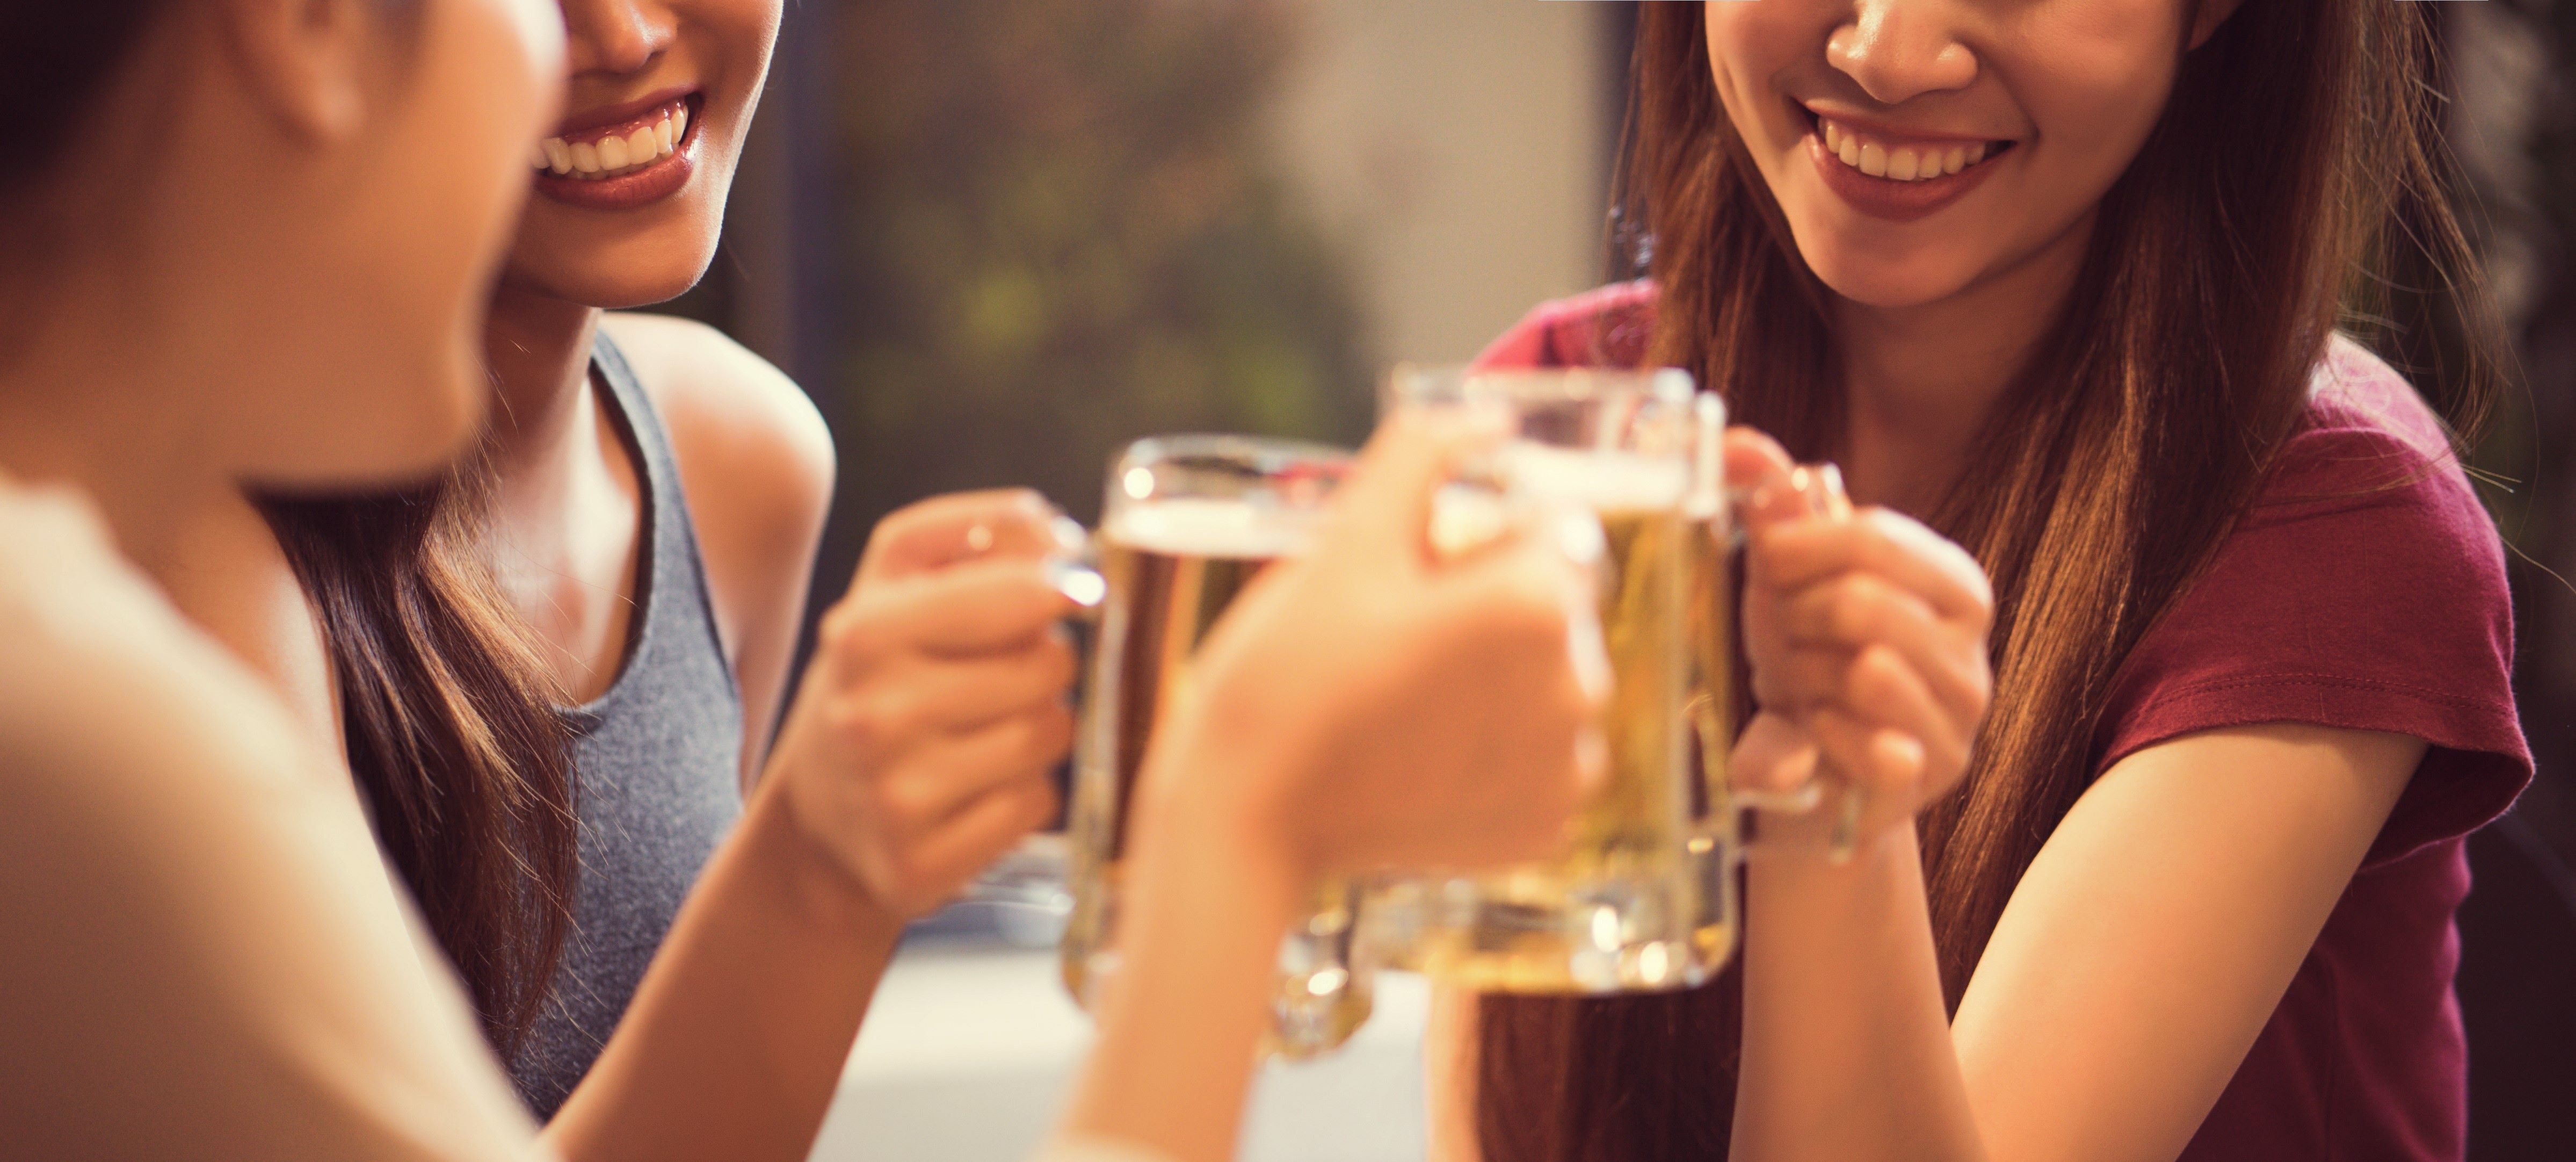 Sok nő szereti a sört, azonban az iparág elsősorban a férfiakra fókuszál